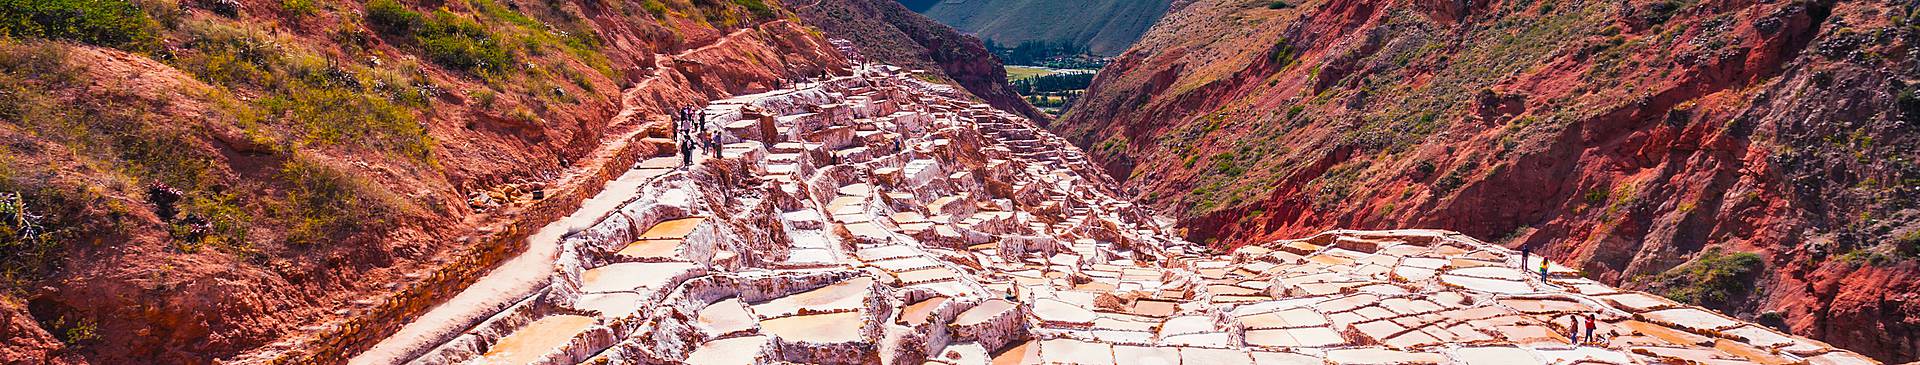 Zonvakantie en zomervakantie in Peru